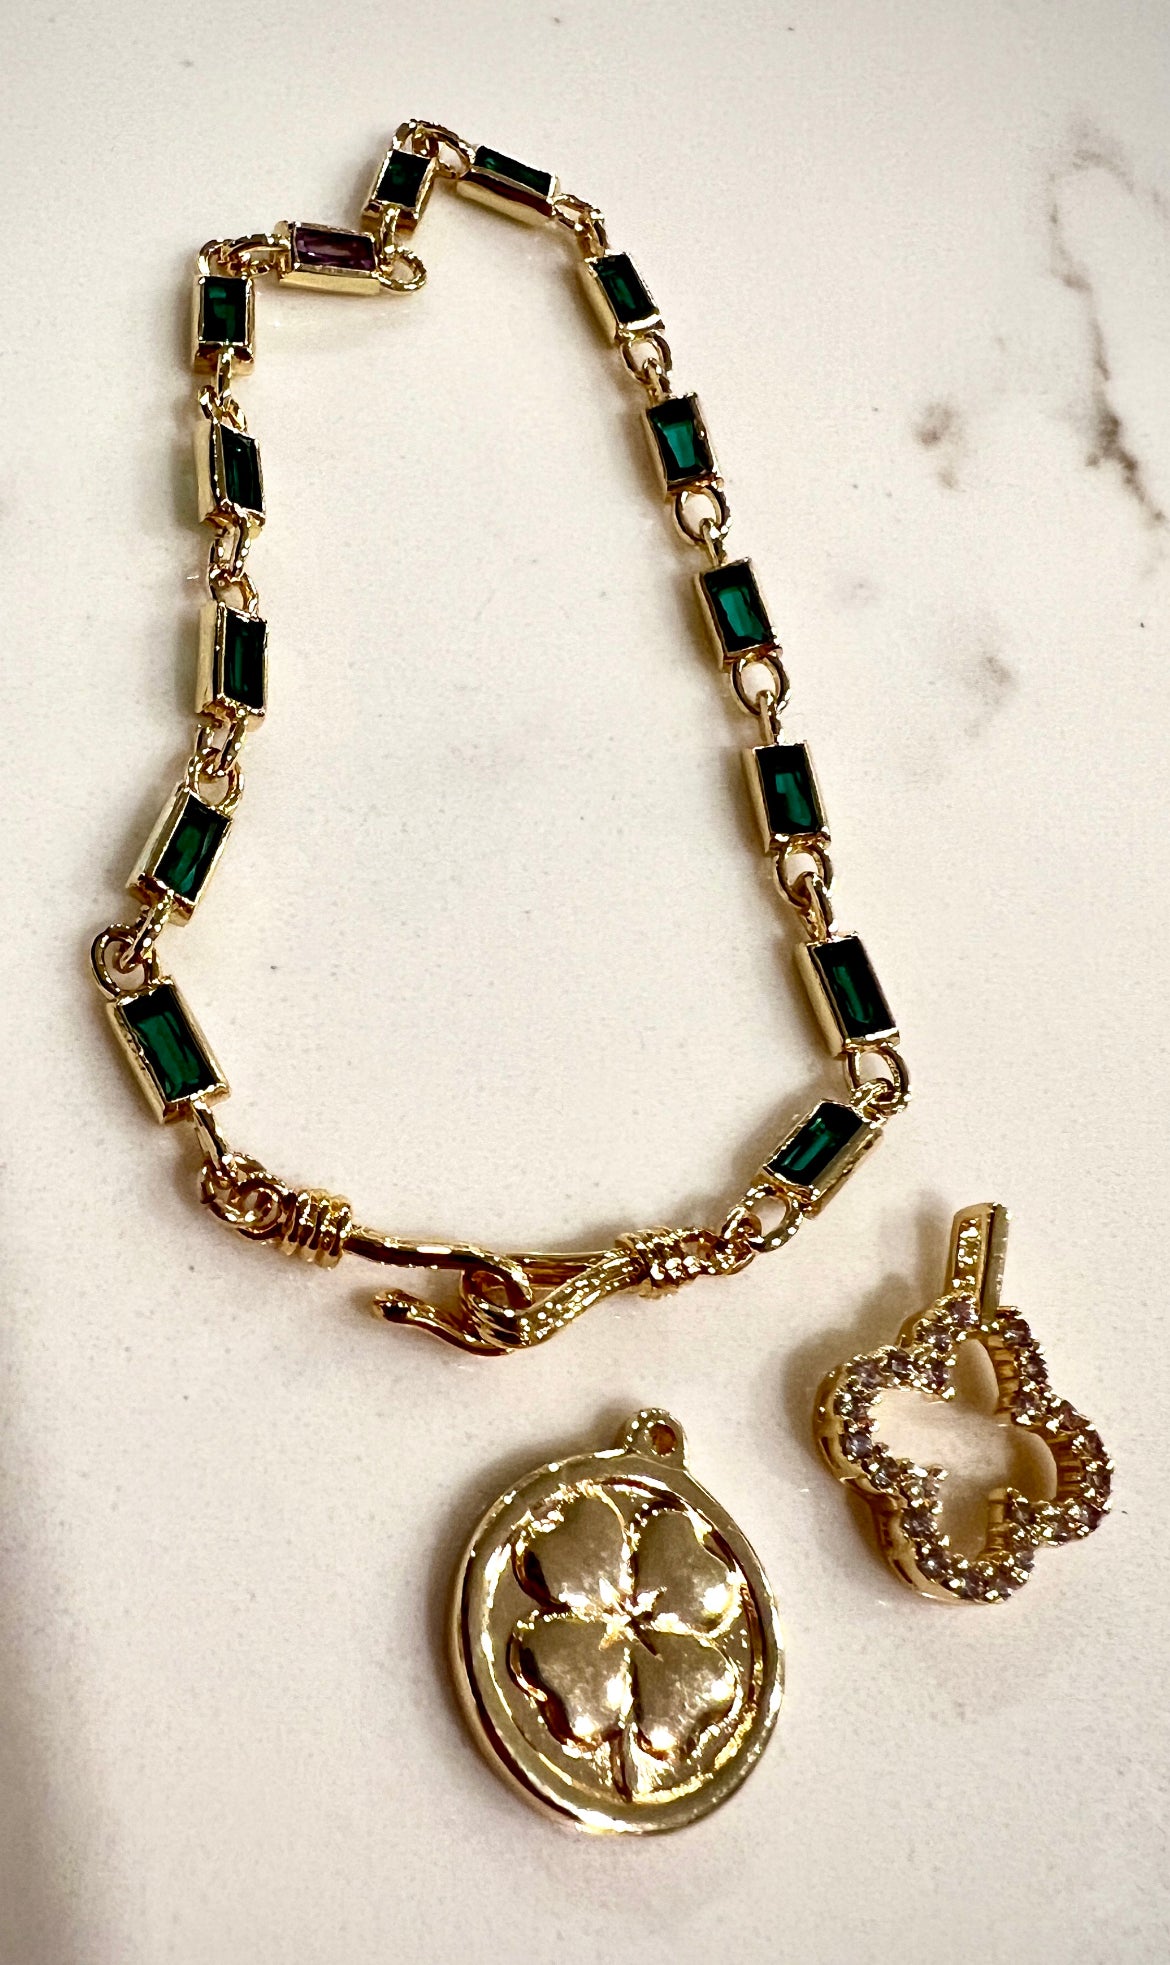 Green Gemstone Bracelet Or Necklace